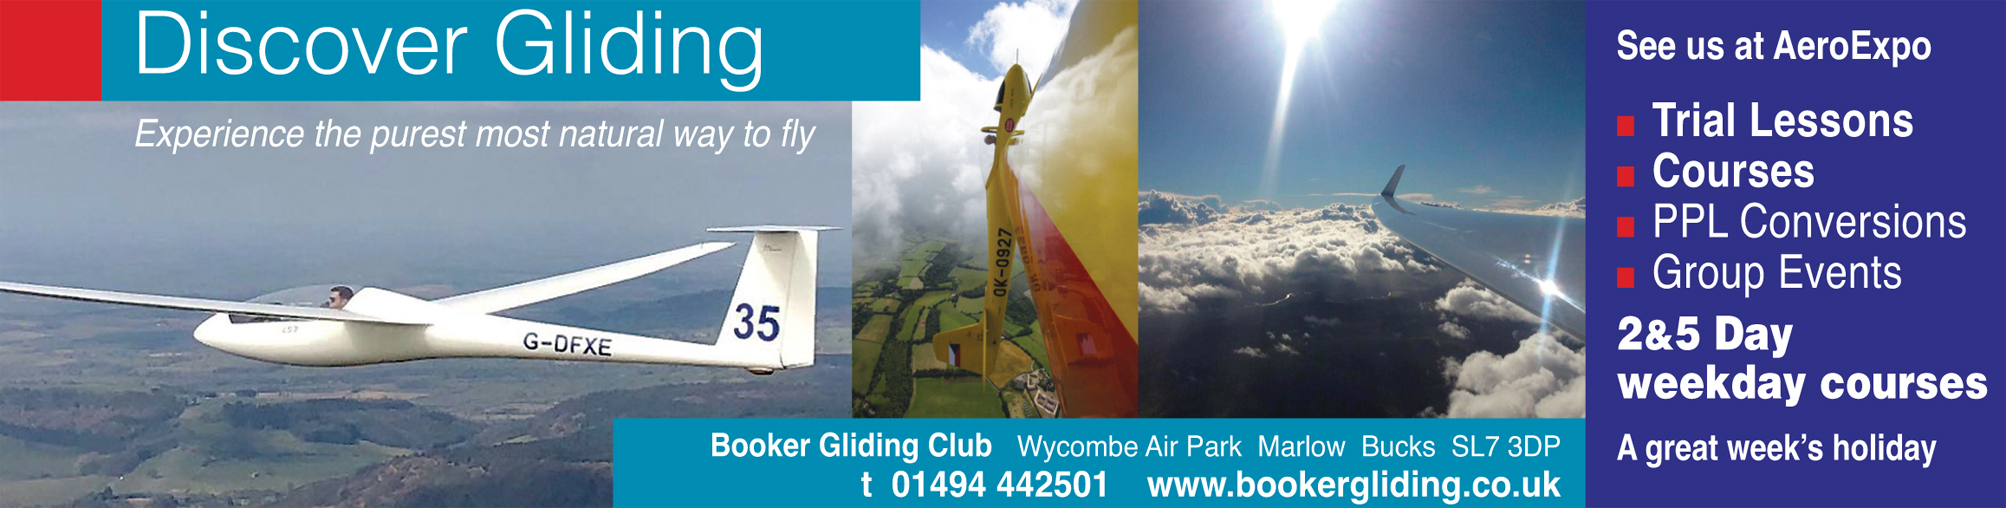 Booker Gliding Club